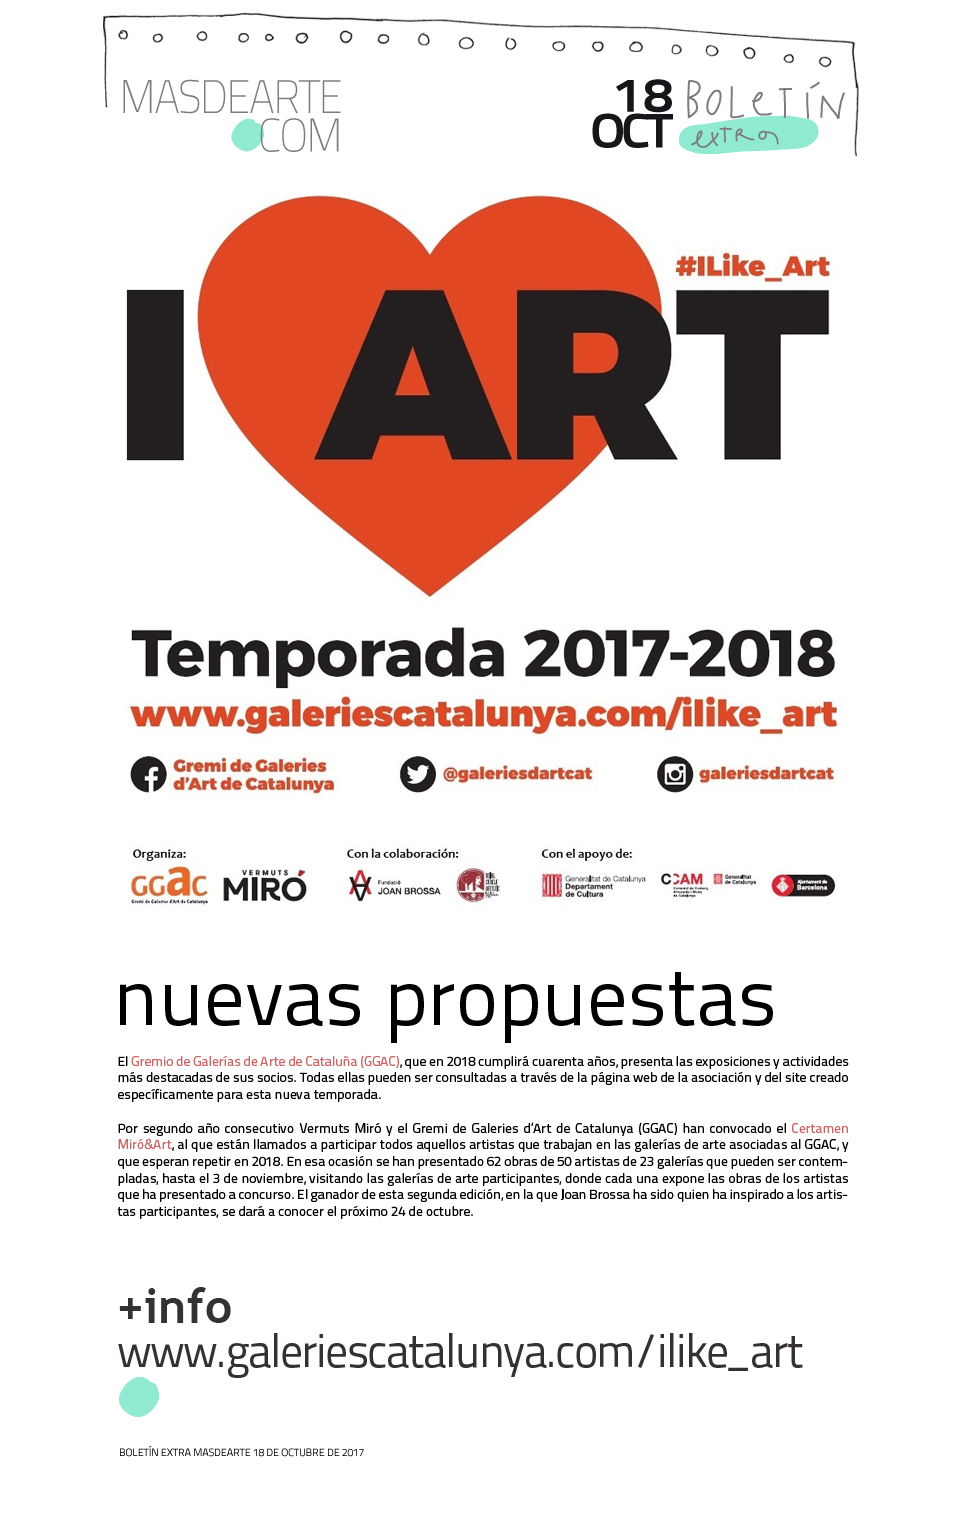 El Gremio de Galerías de Arte de Cataluña  presenta
 las exposiciones y actividades más destacadas de sus socios. 